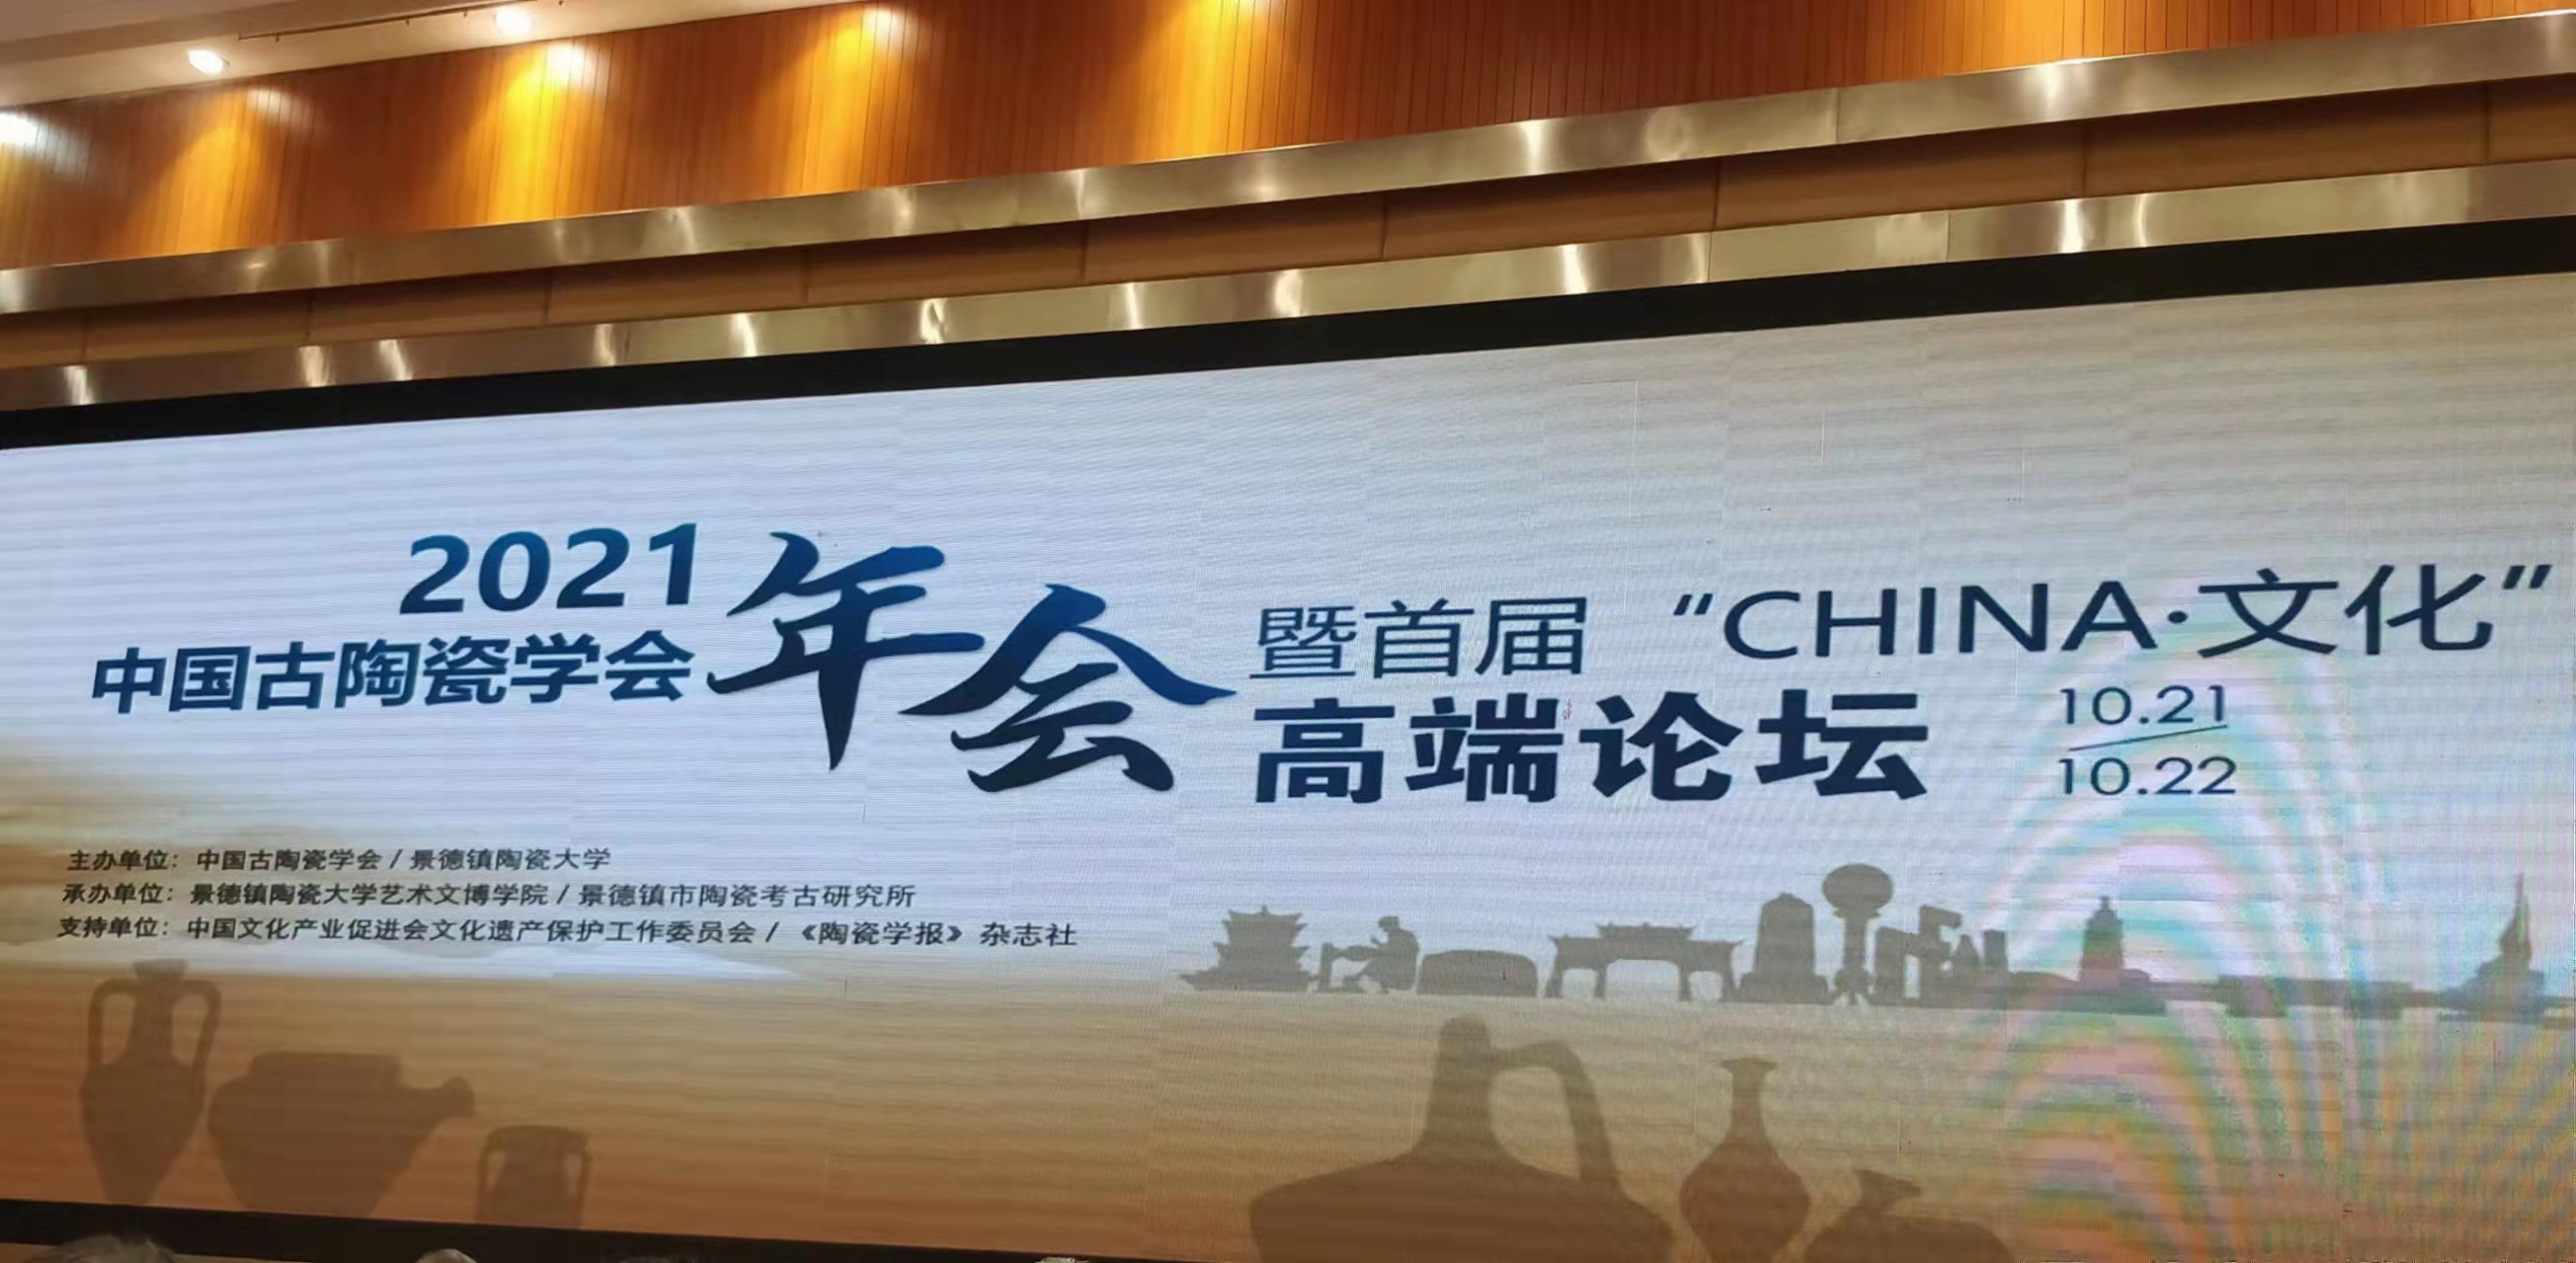 中国古陶瓷学会2021年年会暨首届“CHINA•文化”高端论坛.jpg